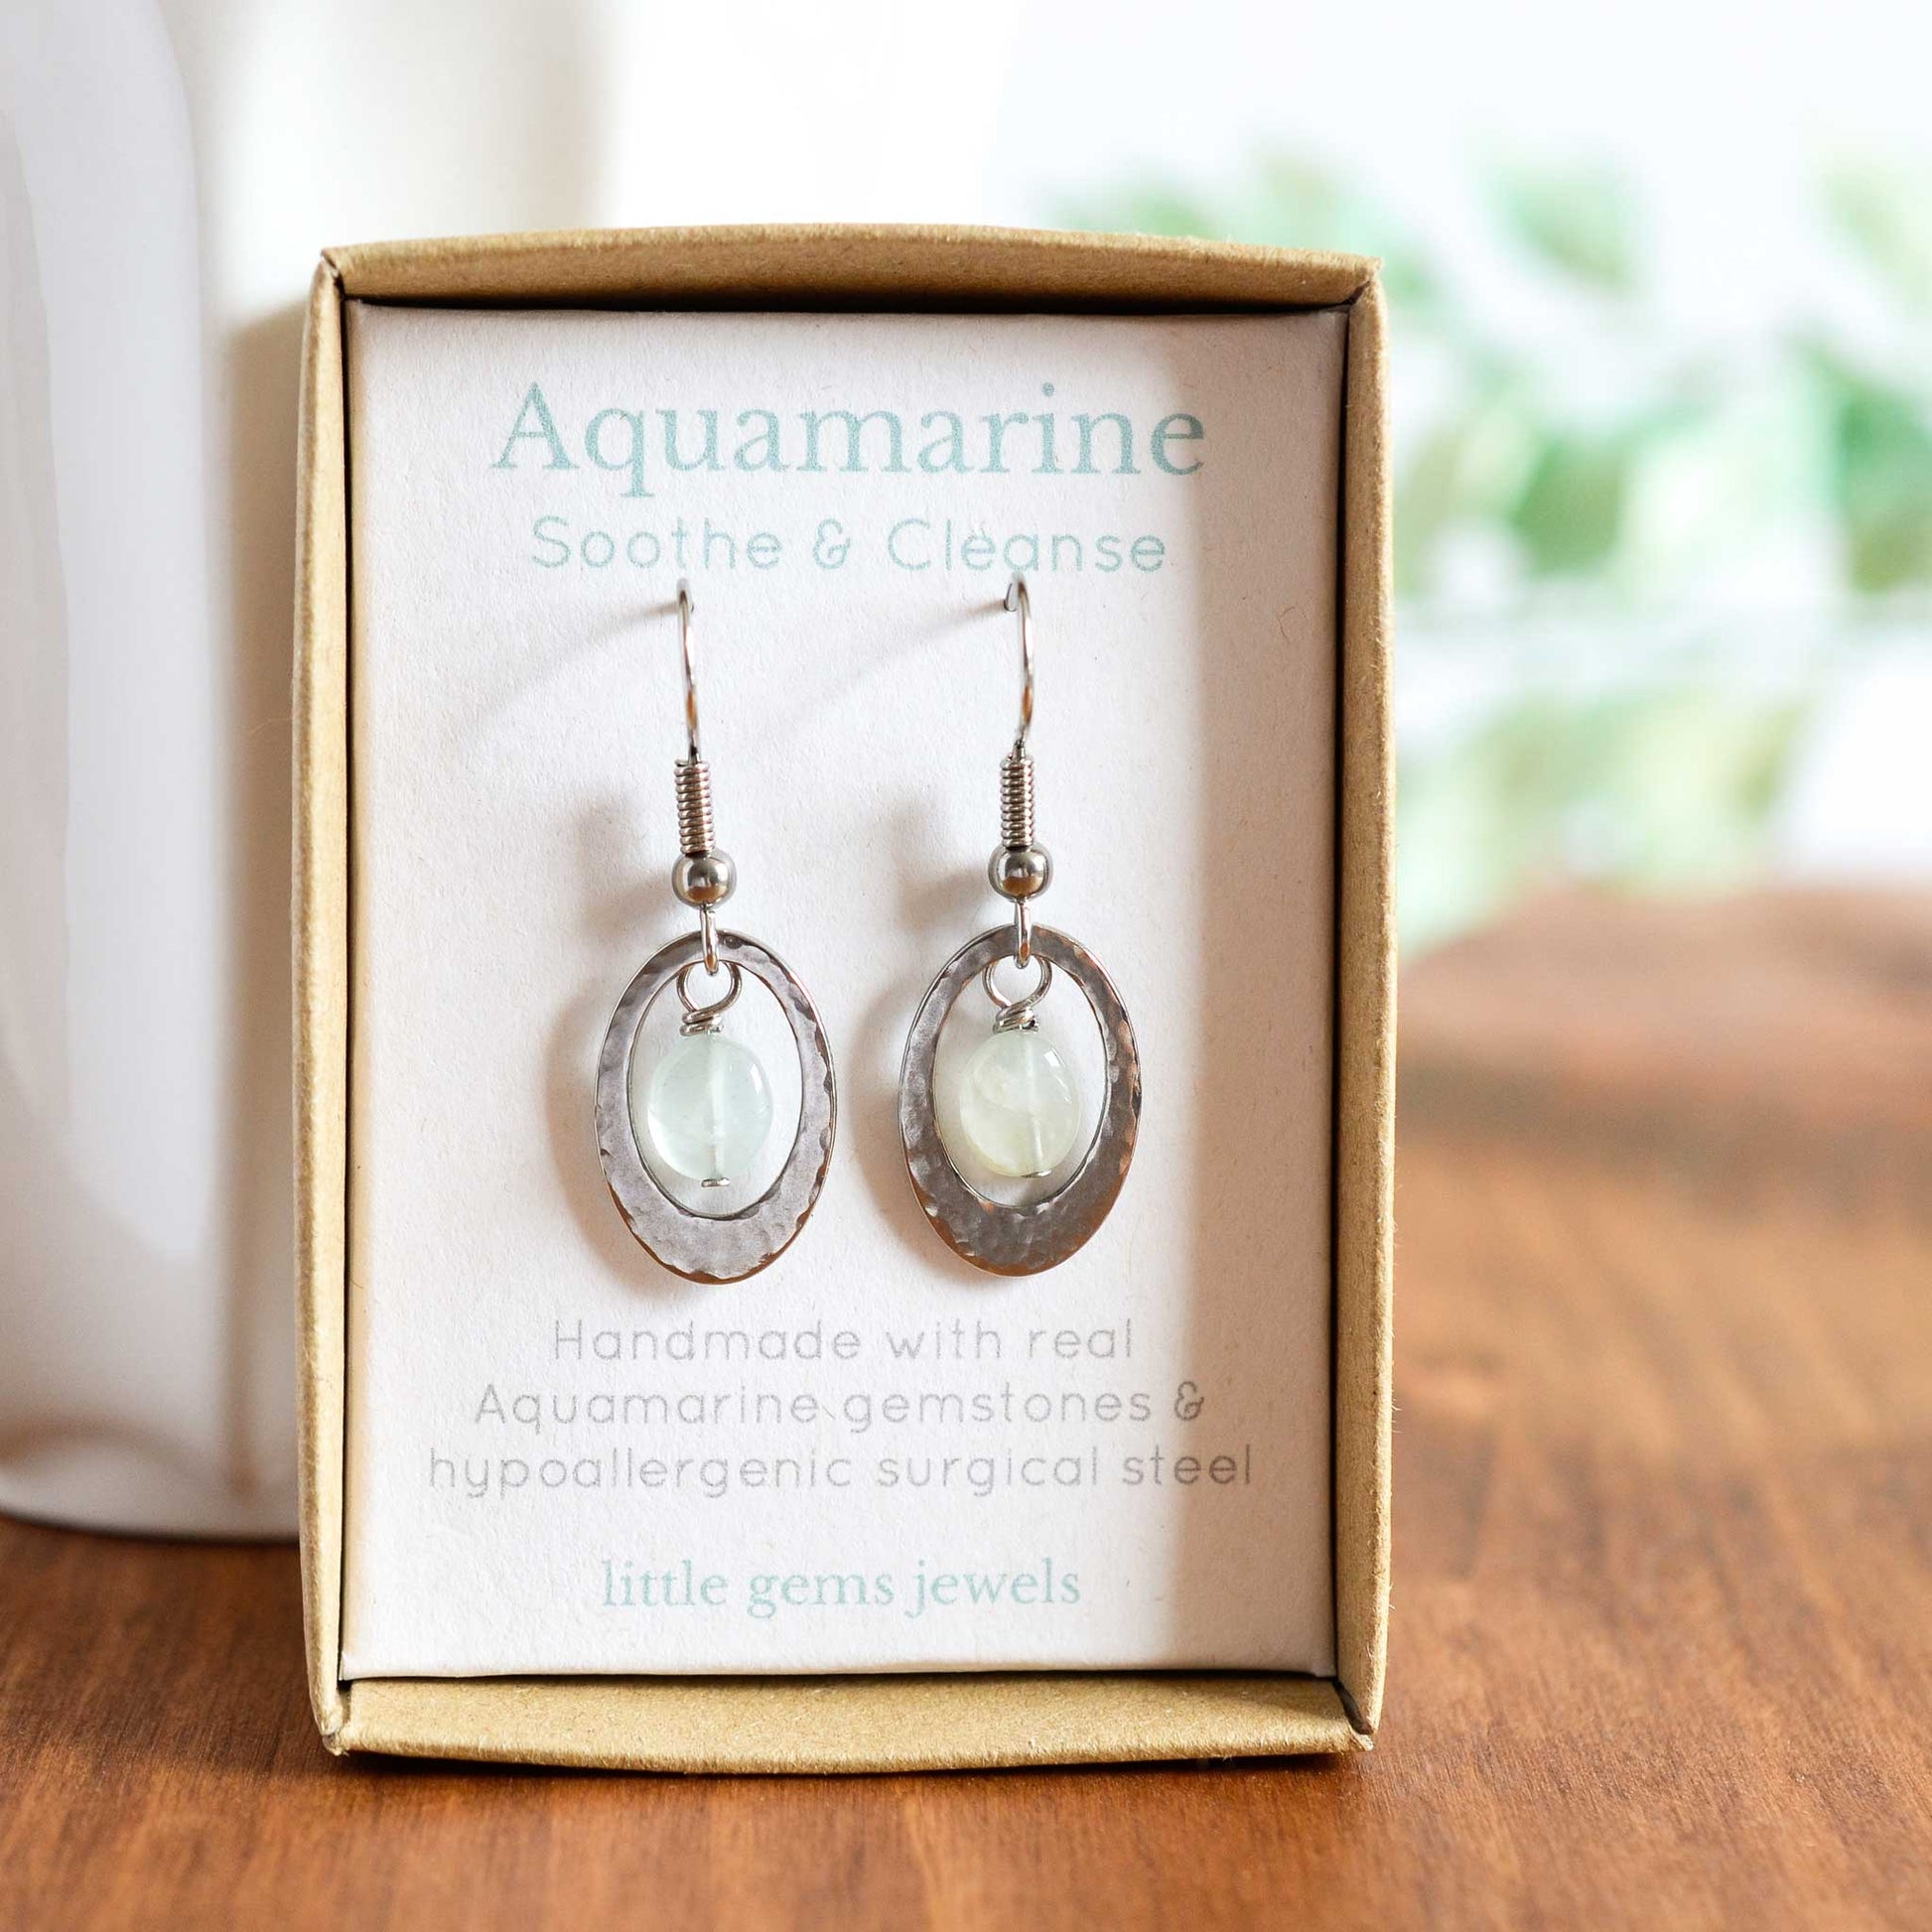 Aquamarine drop earrings in eco friendly gift box